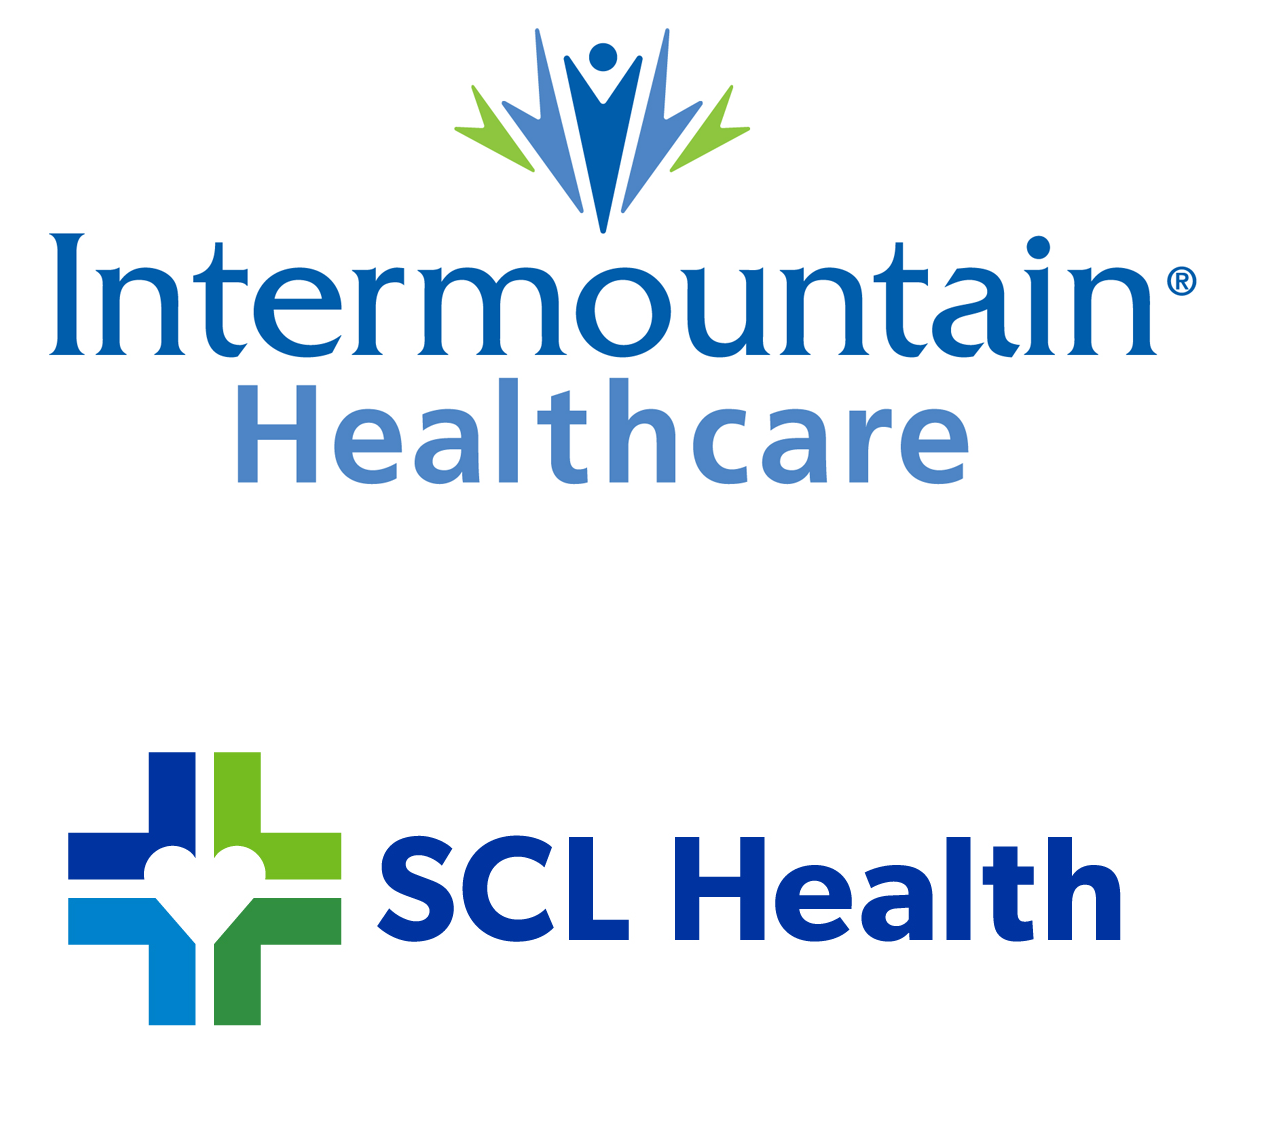 Intermountain Healthcare SCL Health'